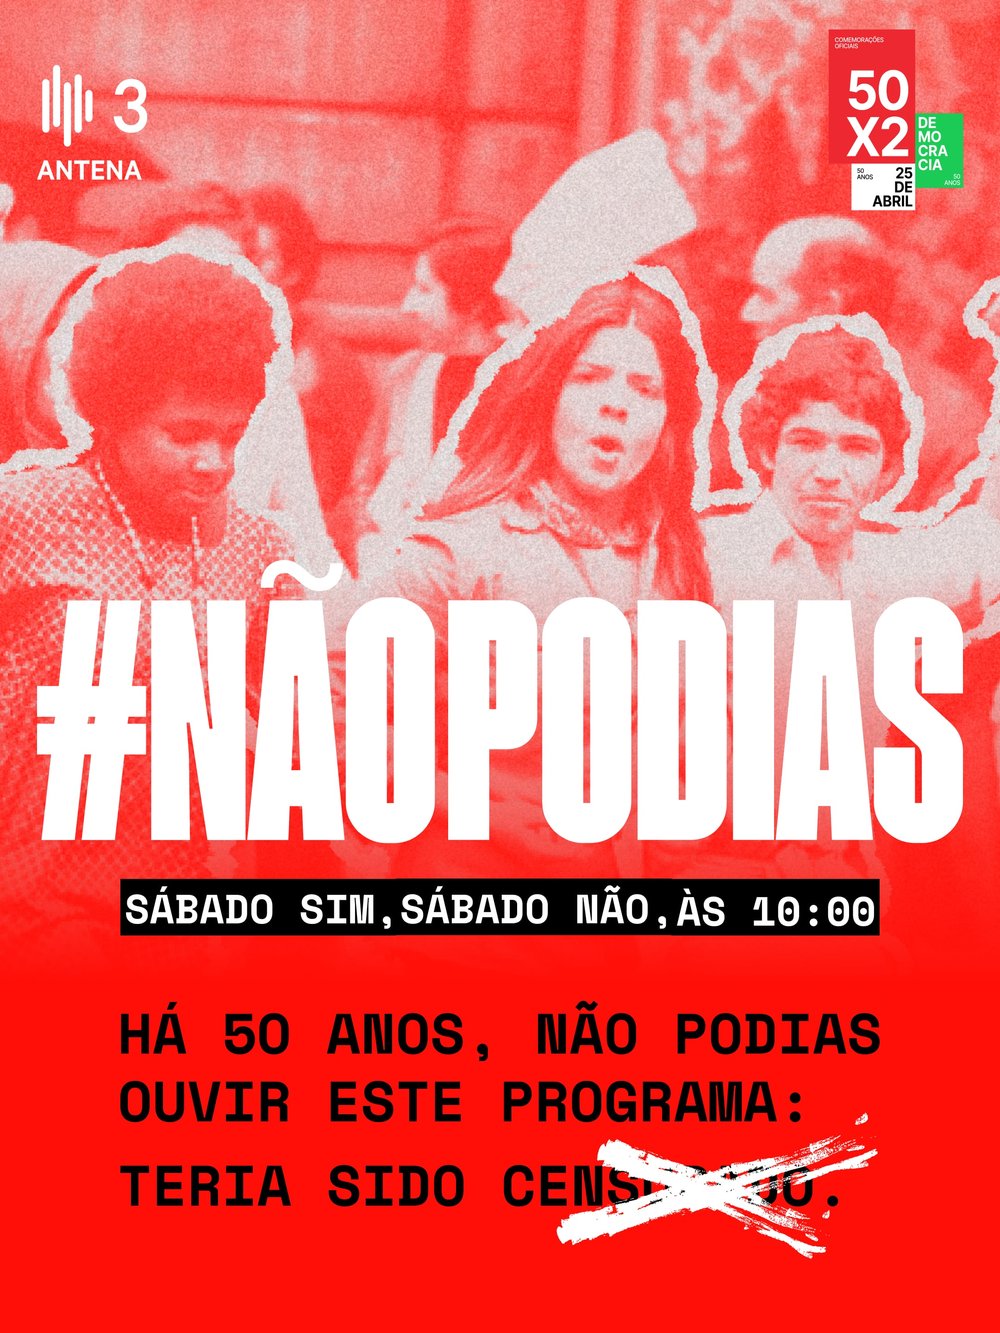 Programa #NãoPodias na Antena 3 - Comissão Comemorativa 50 Anos 25